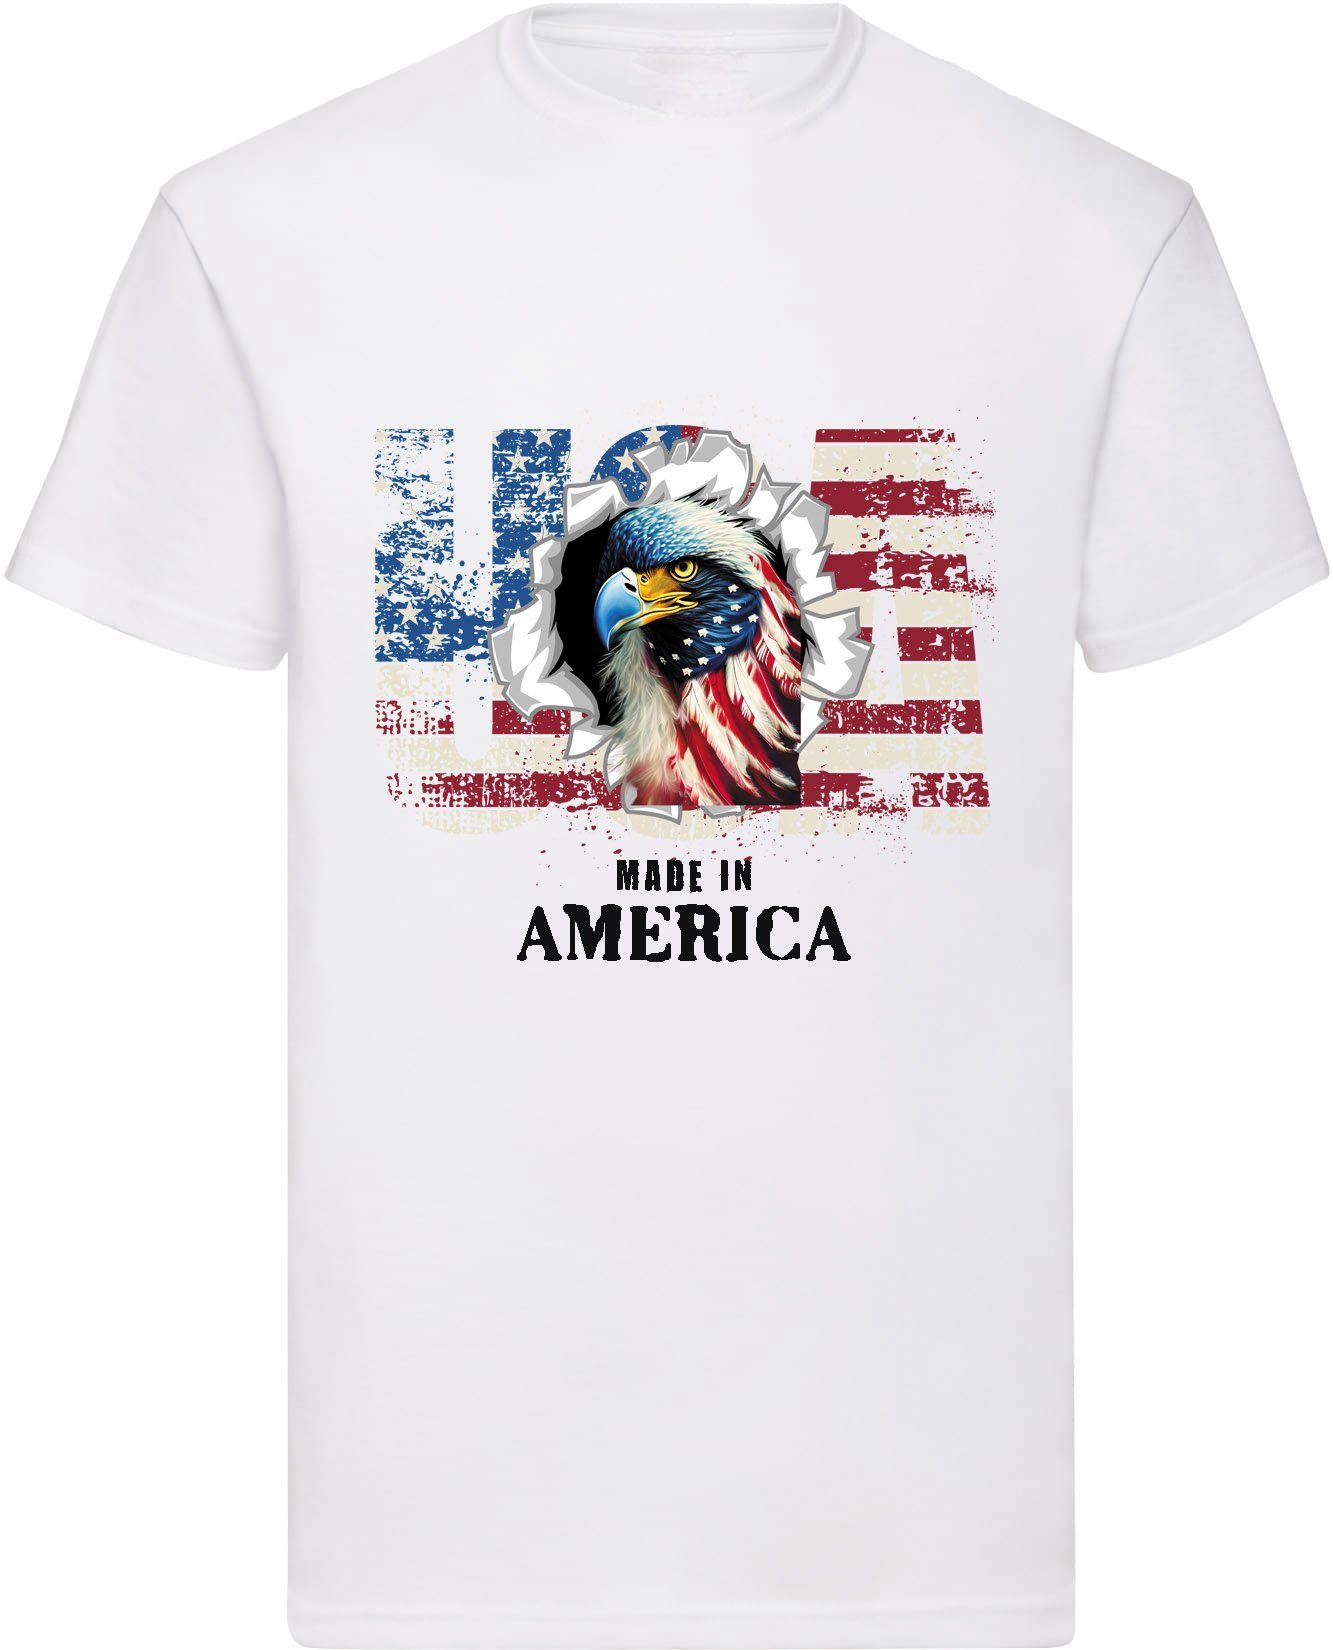 Banco T-Shirt Herren T-Shirt USA Adler Independence Day (01) 100% Baumwolle Druck Weiß